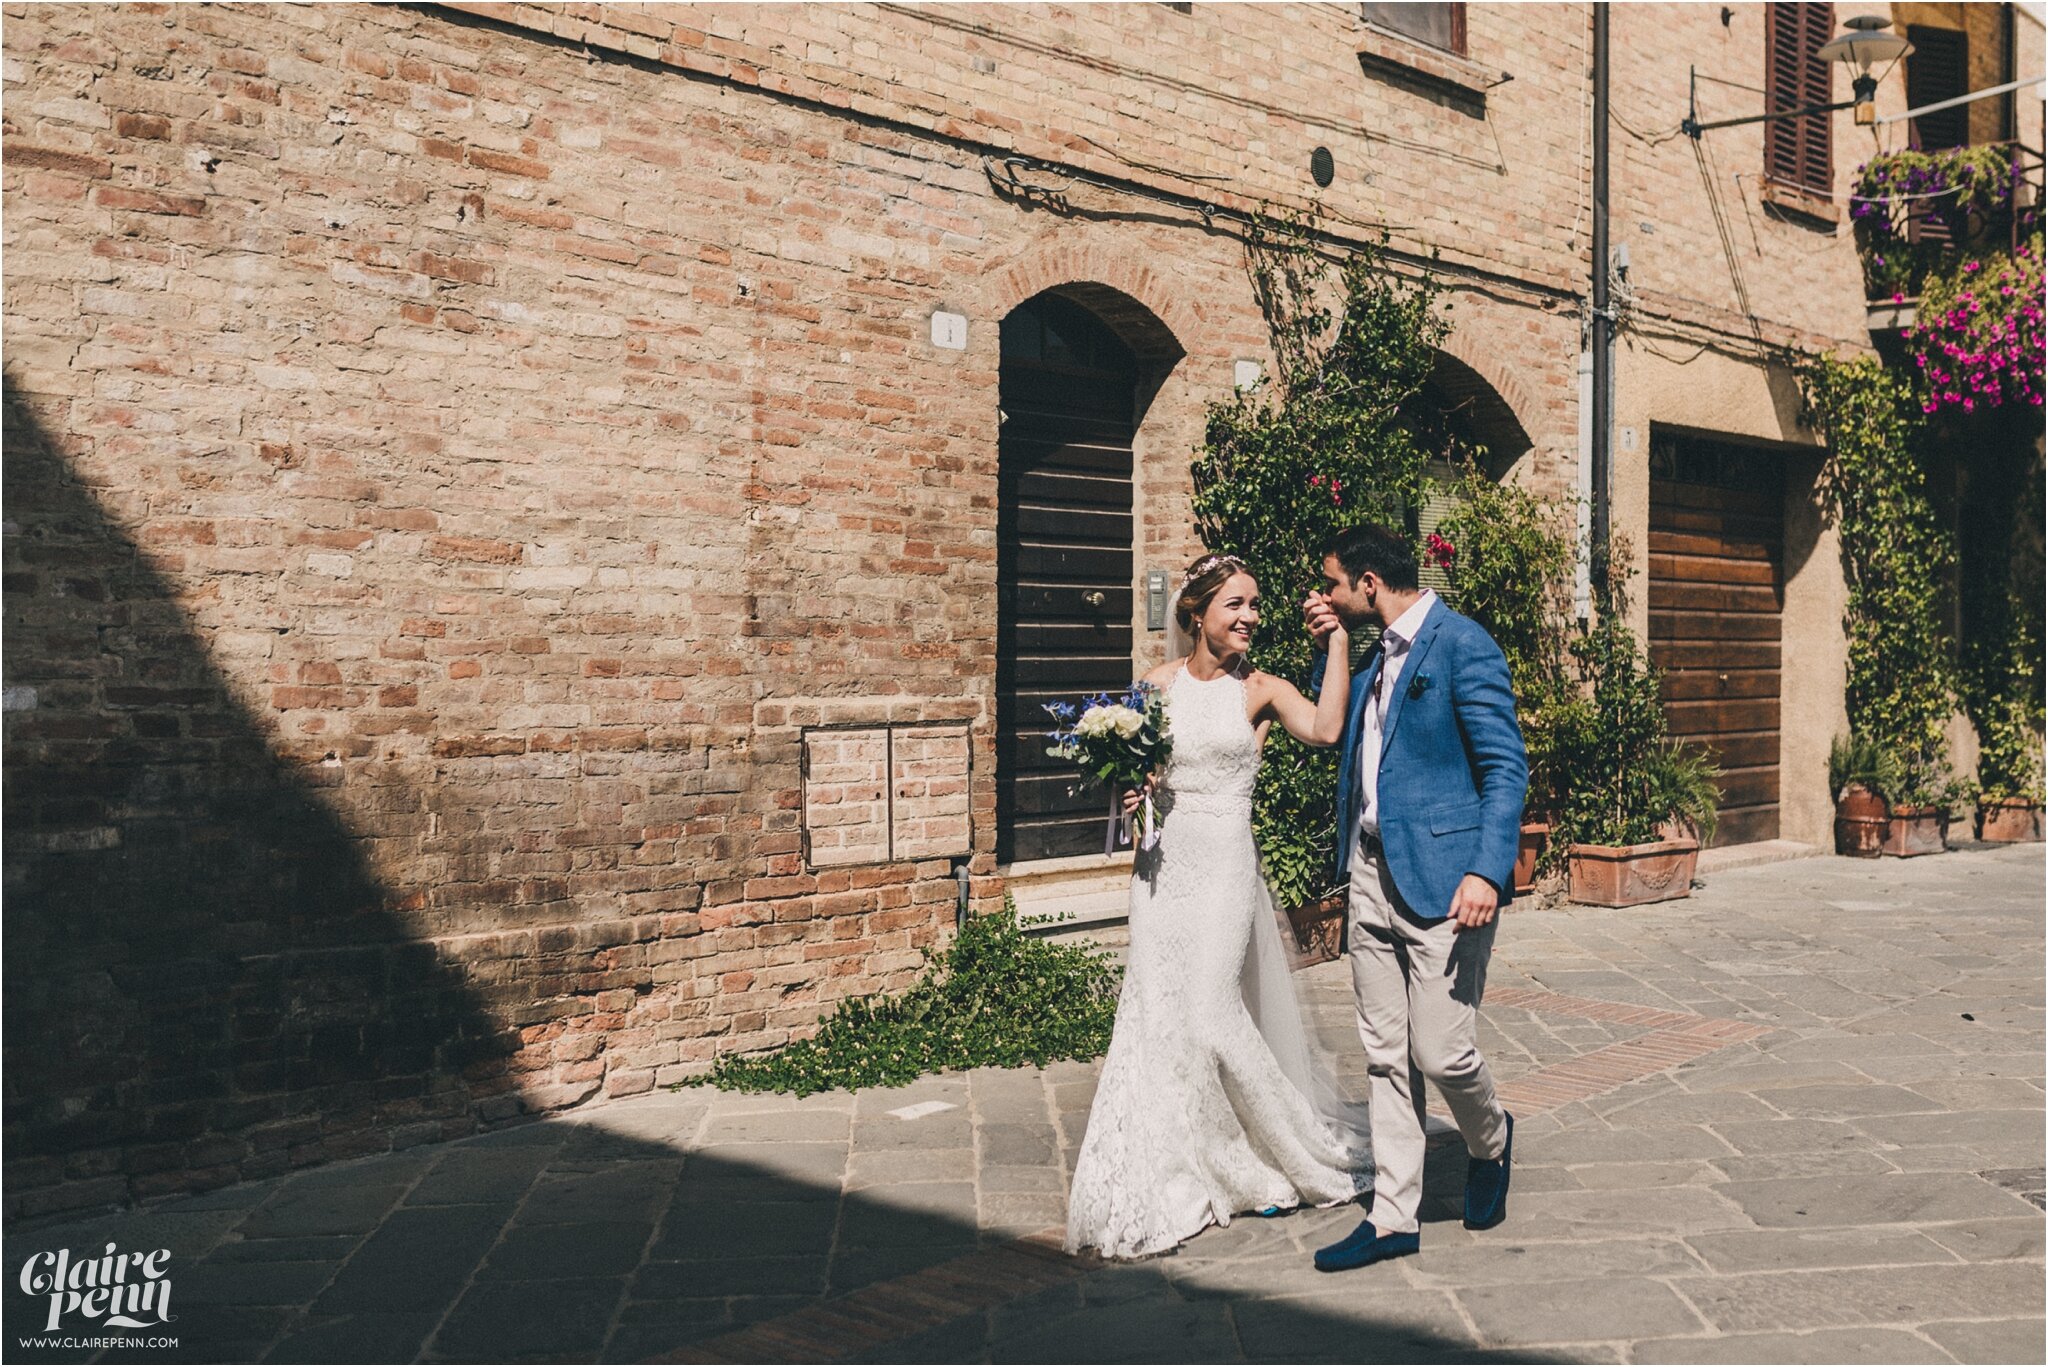 Dreamy-Tuscan-destination-wedding-Italy-00025.jpg